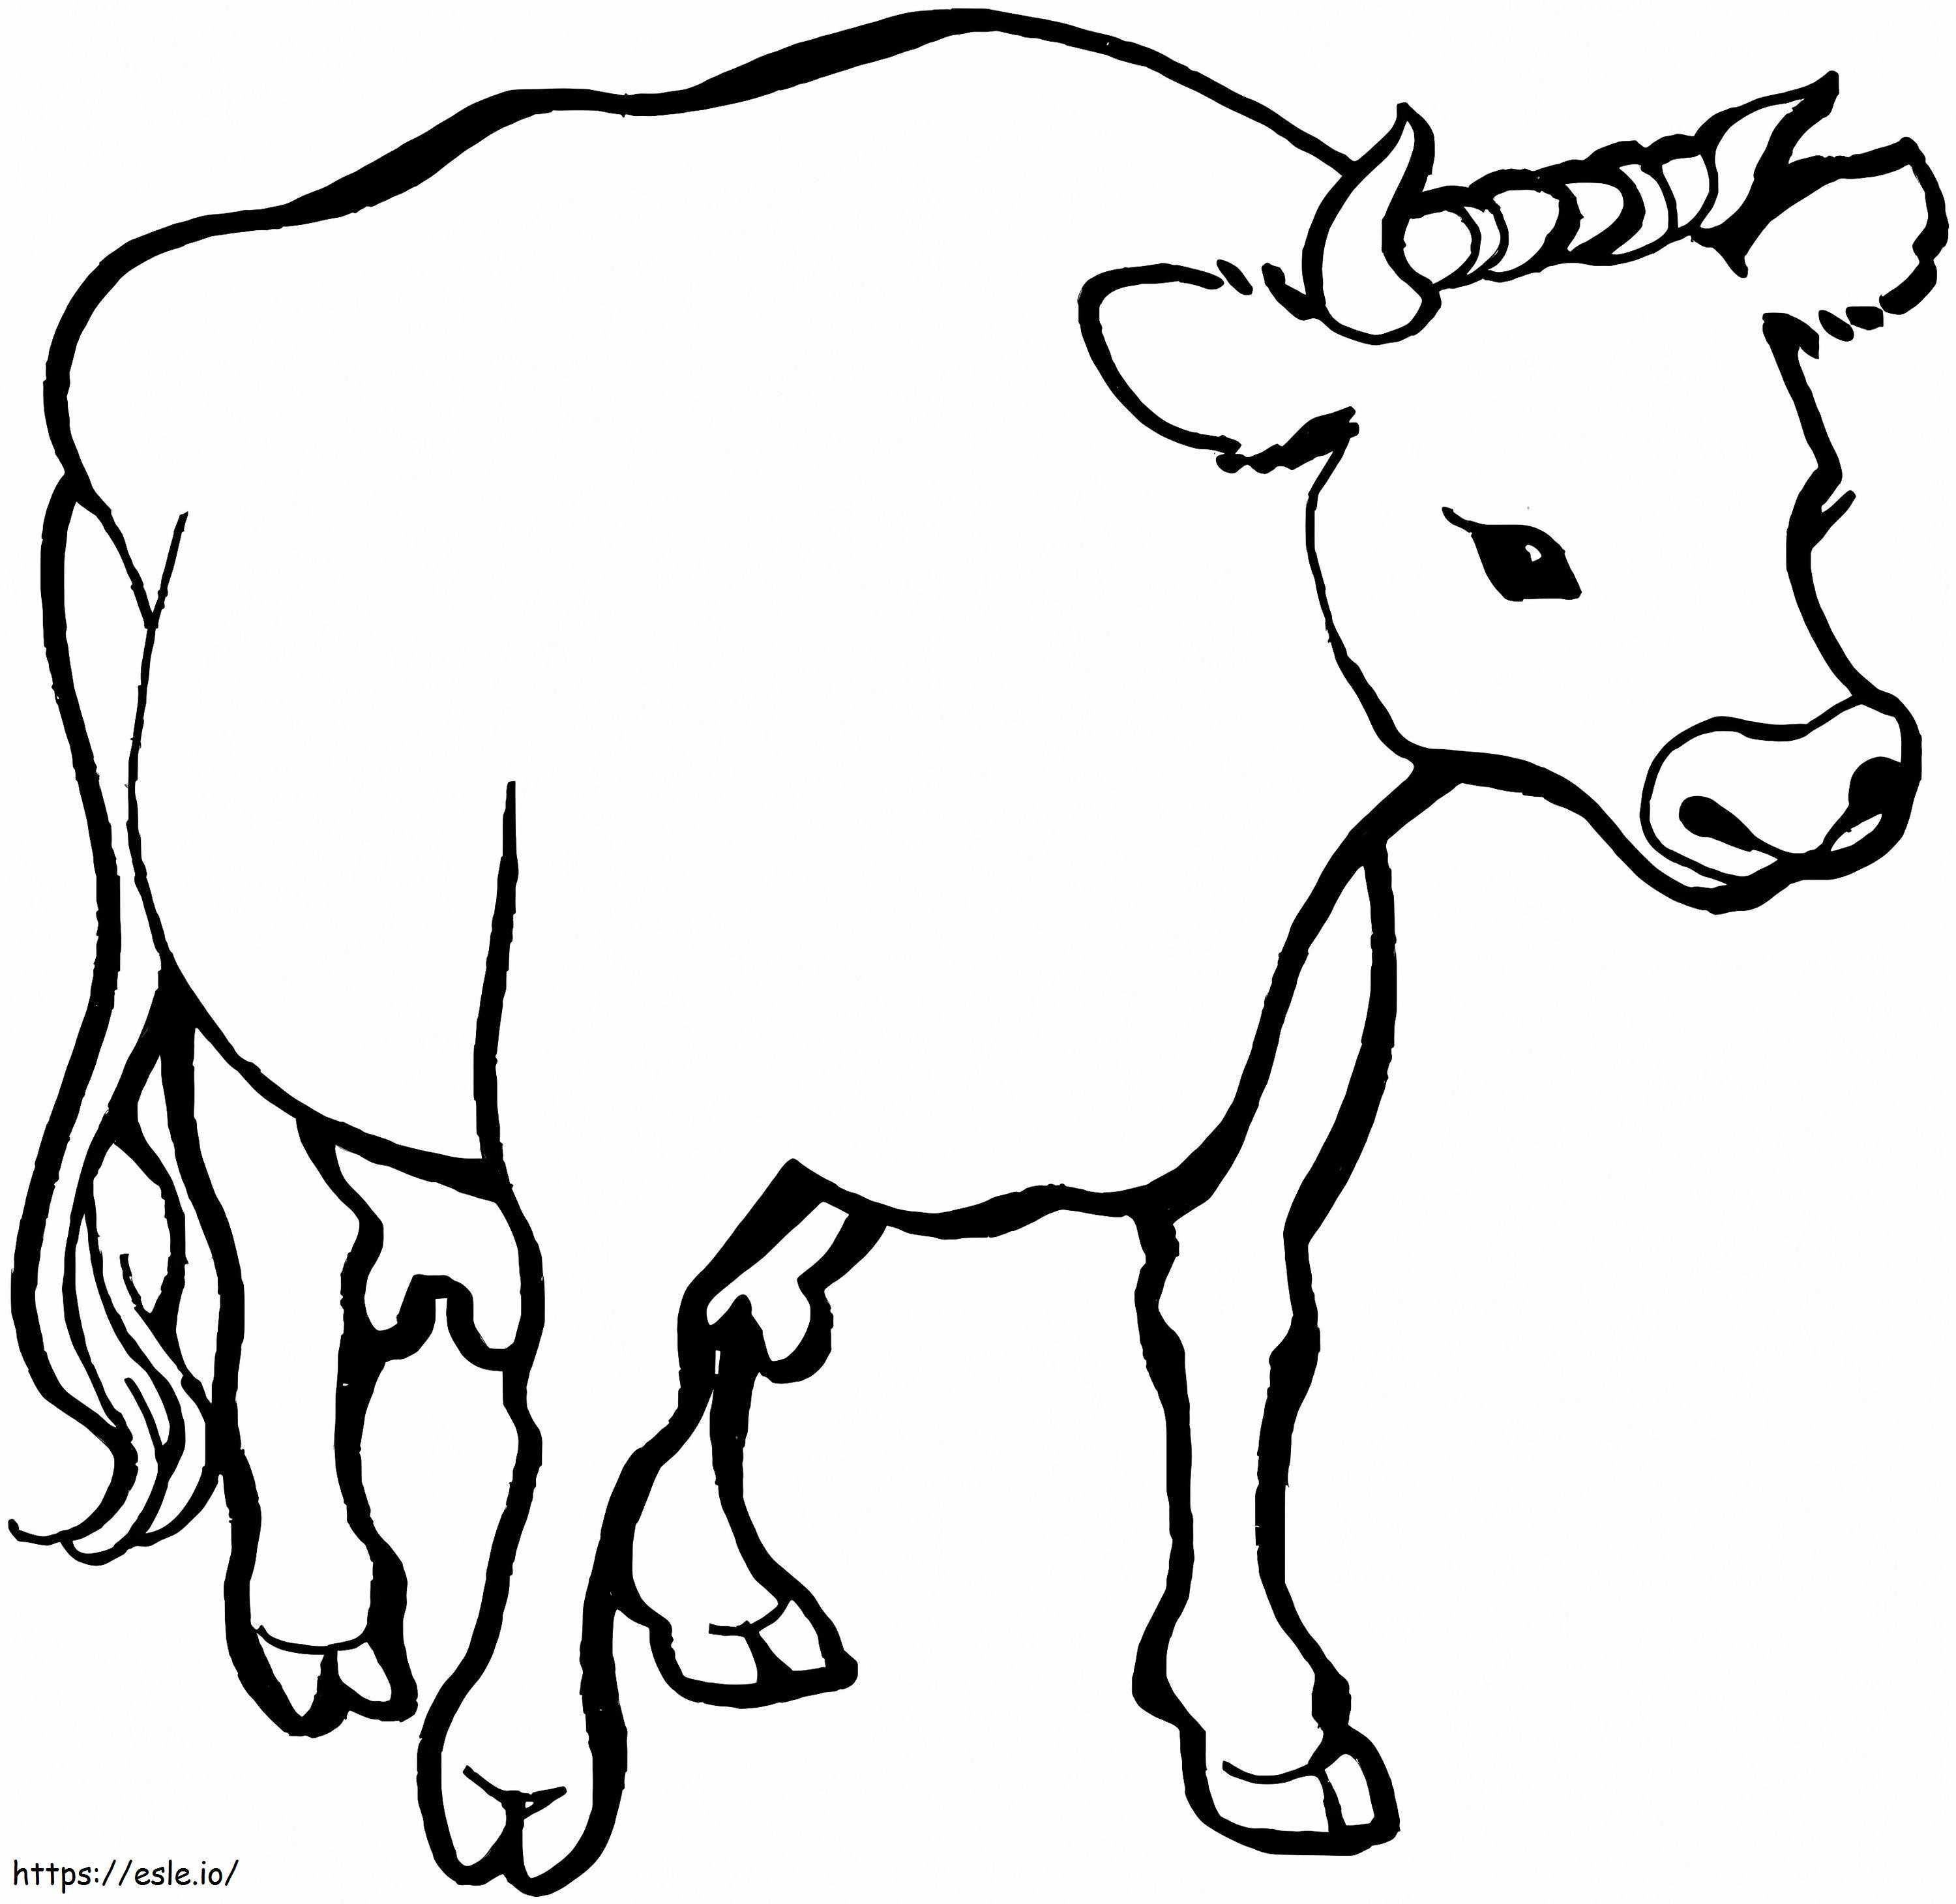 Coloriage Une vache à imprimer dessin